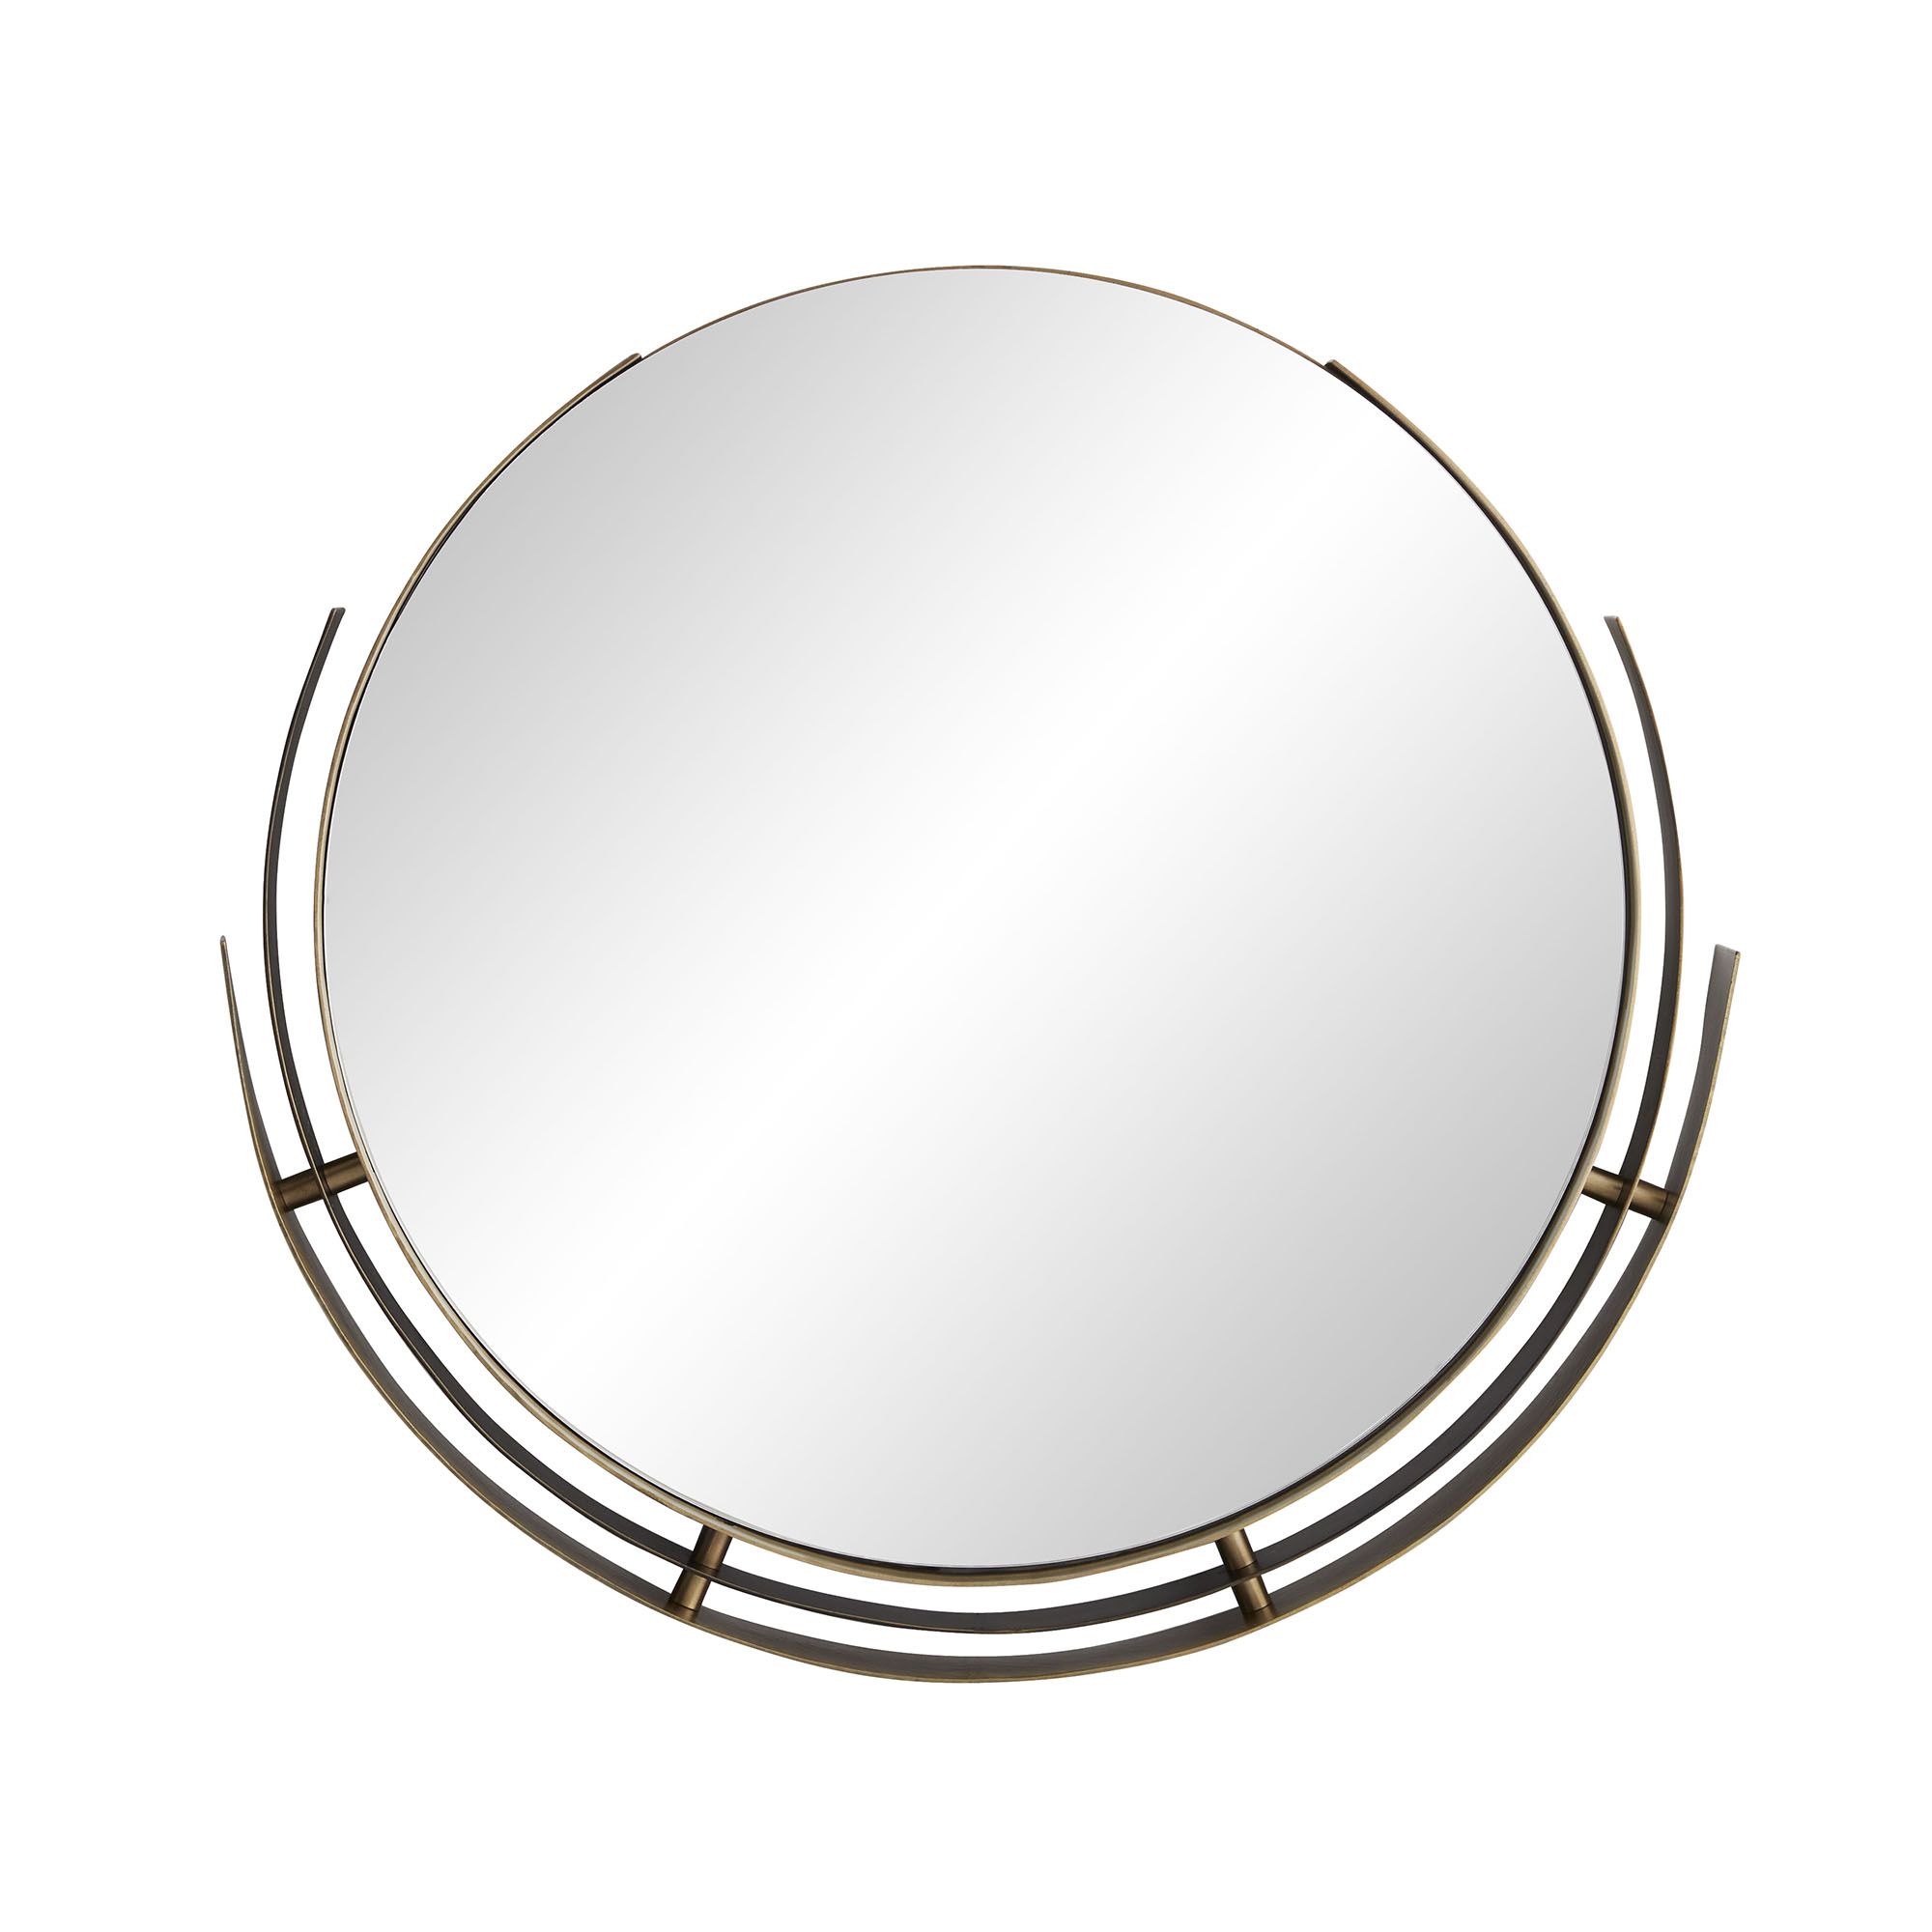 Купить Настенное зеркало Joplin Mirror в интернет-магазине roooms.ru